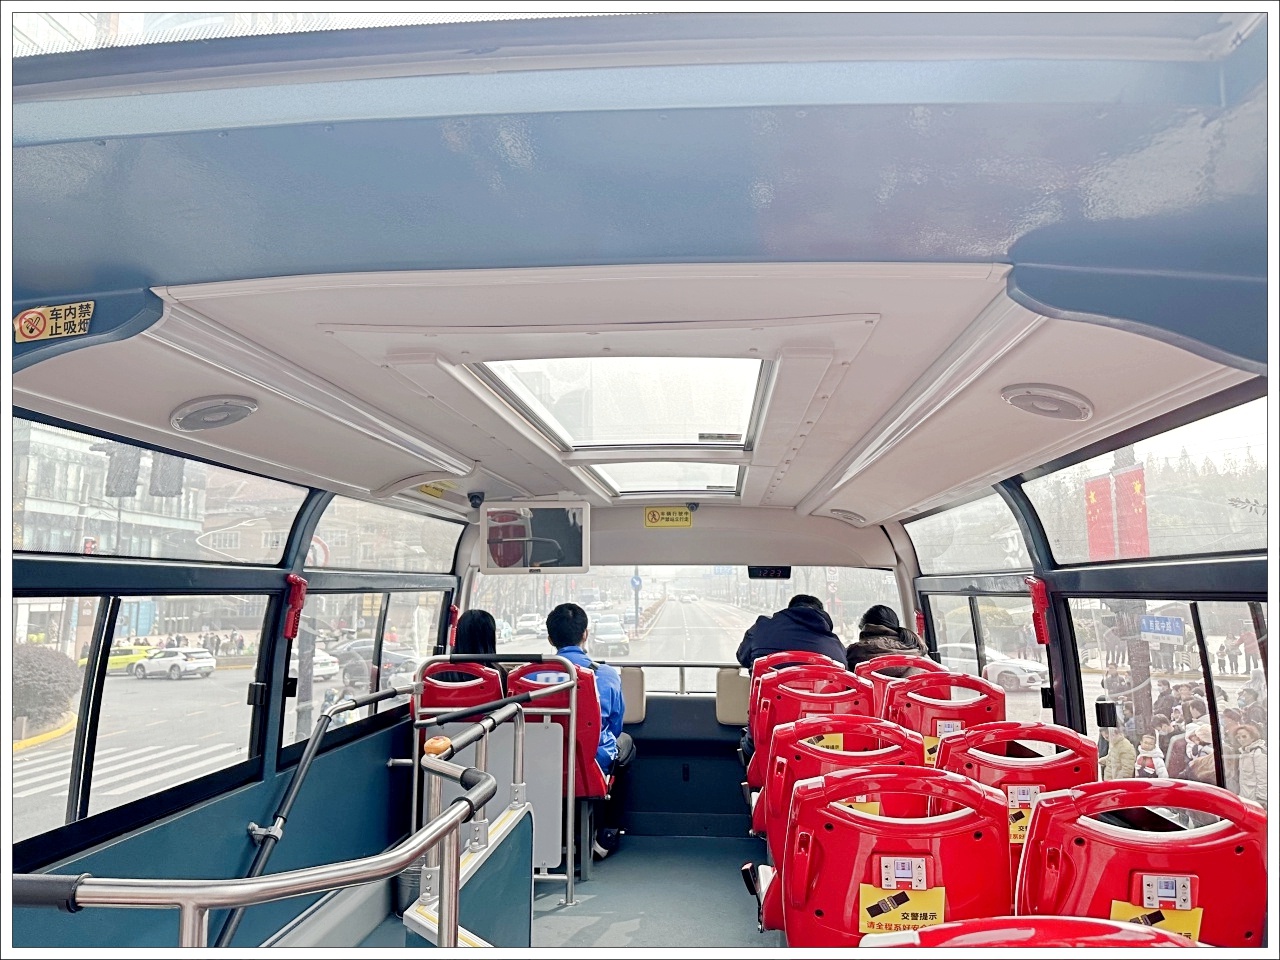 上海思南路交通,上海觀光巴士 路線,上海觀光巴士一日券,上海觀光巴士景點,上海觀光巴士費用,上海雙層巴士 @壞波妞の旅行食踨